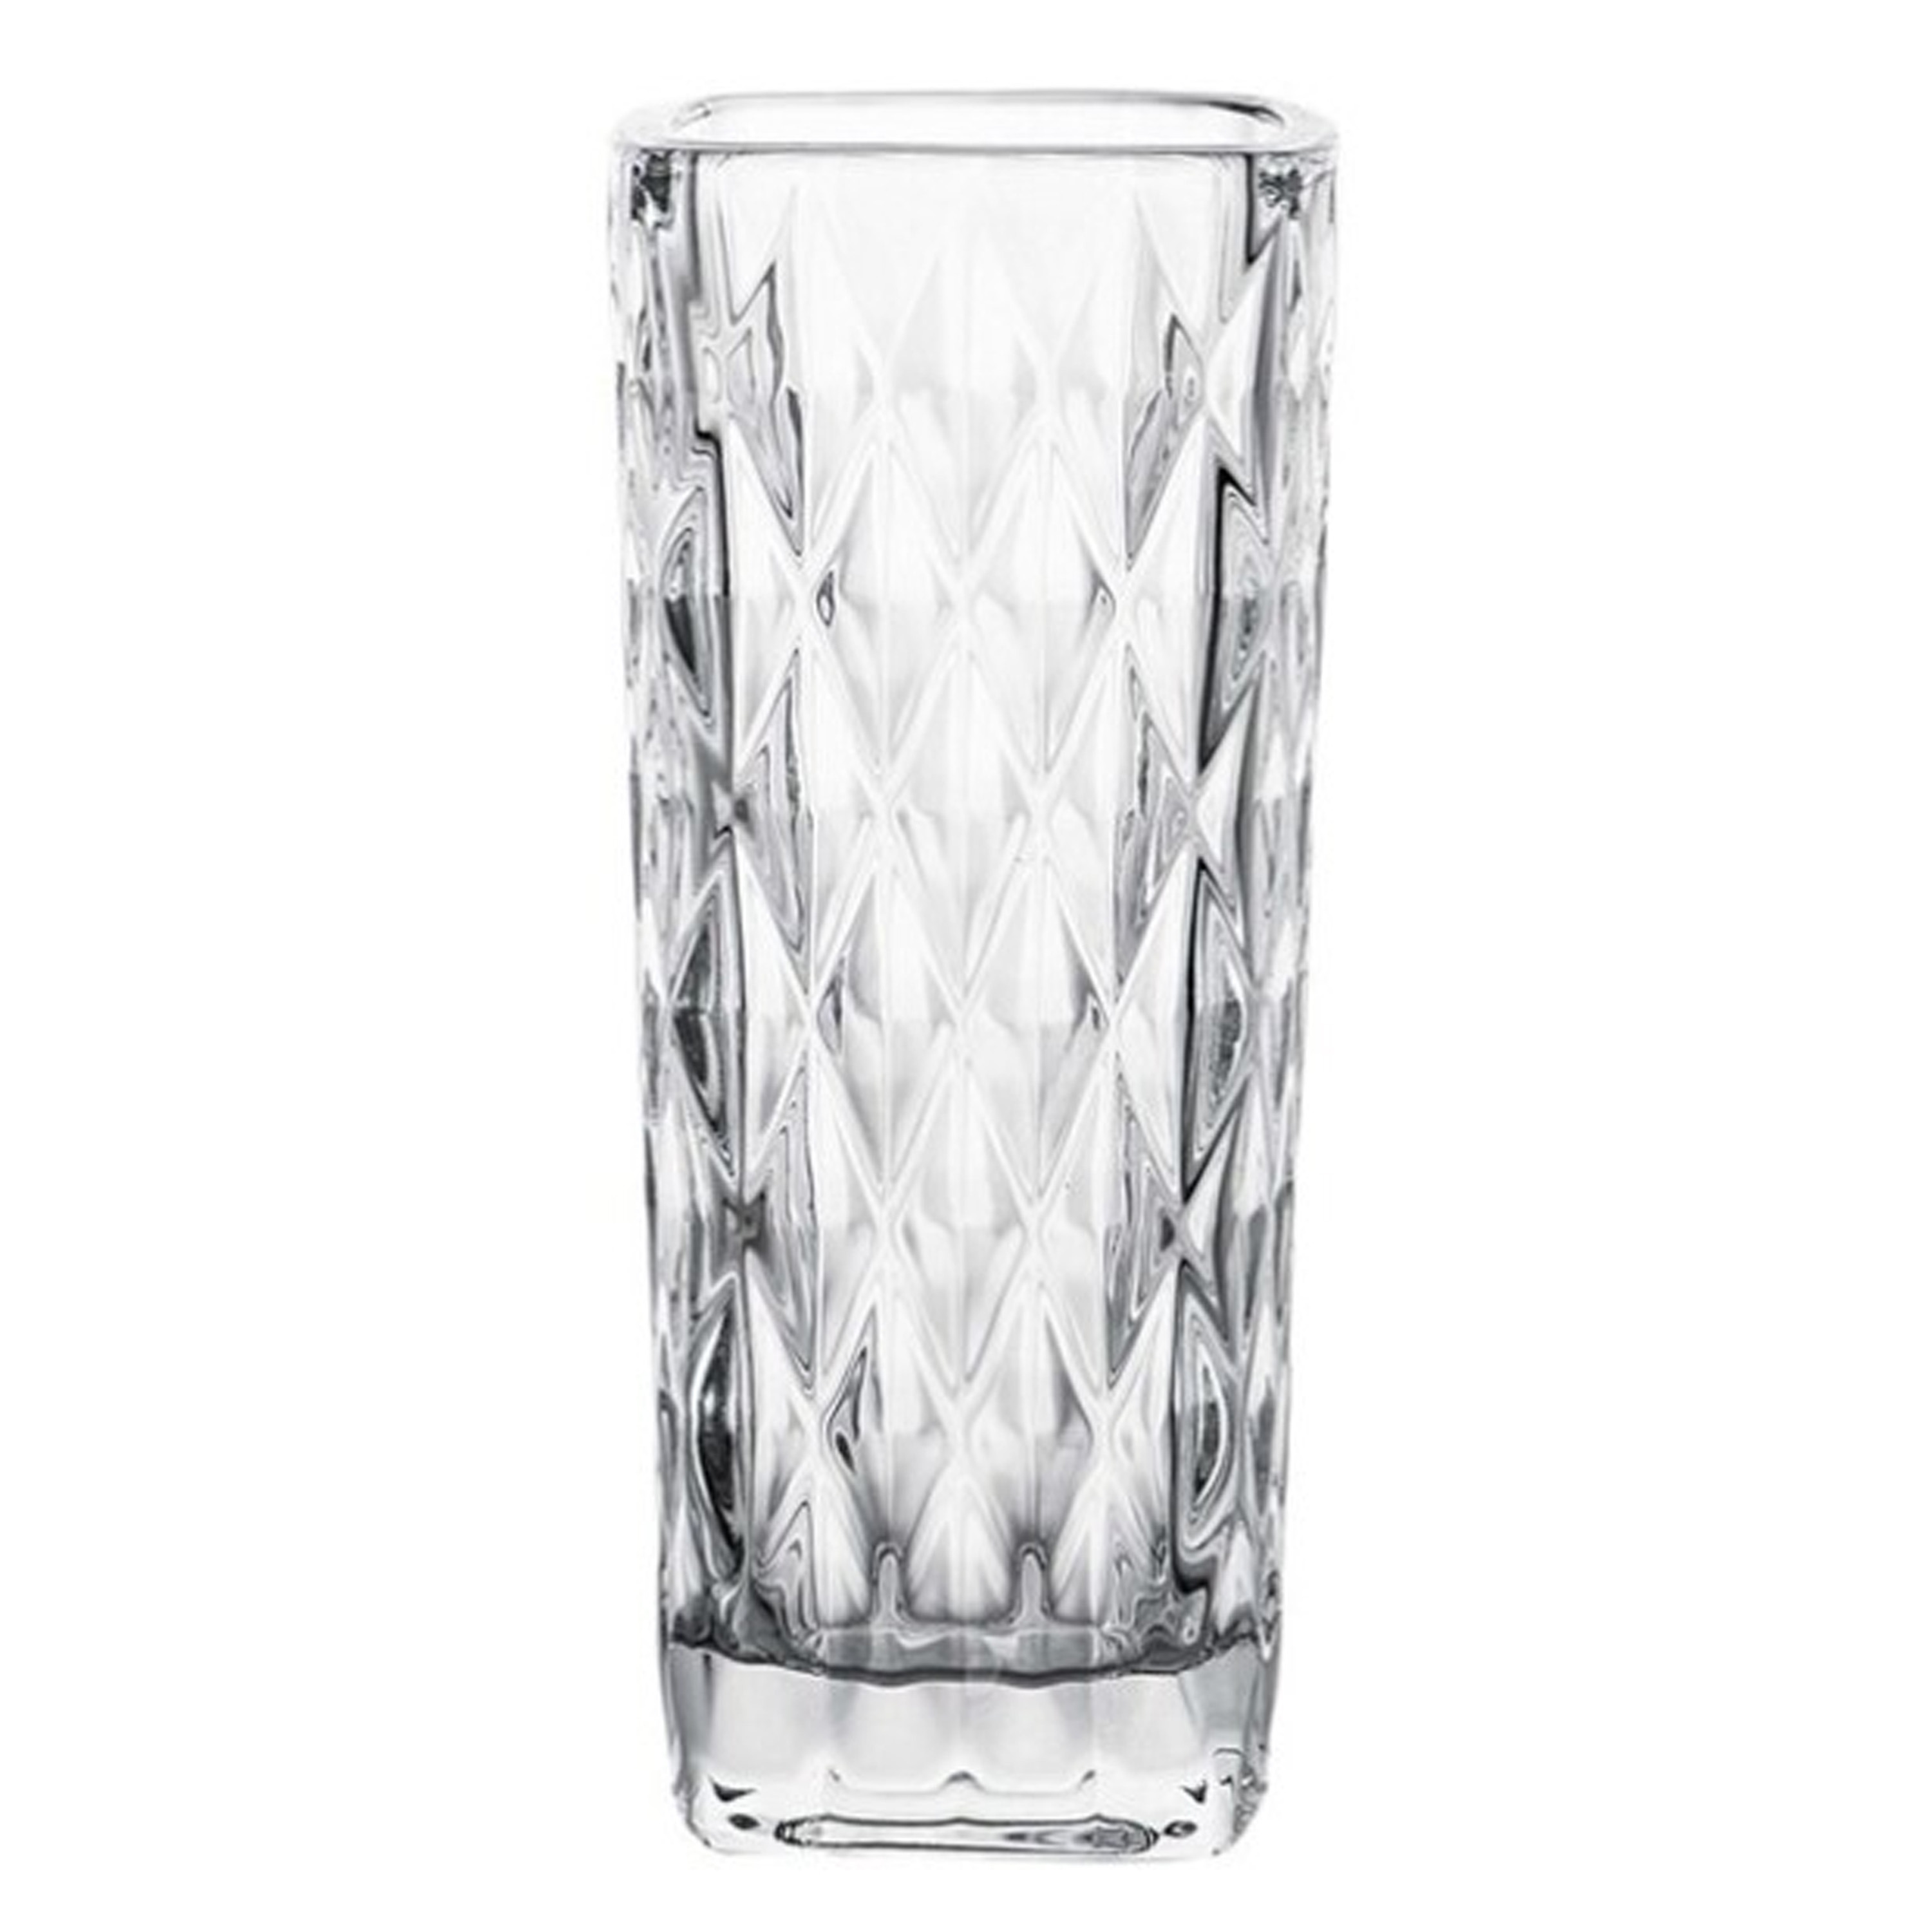 Gerimport Bloemenvaasje voor kleine stelen-boeketten helder glas D6 x H15 cm